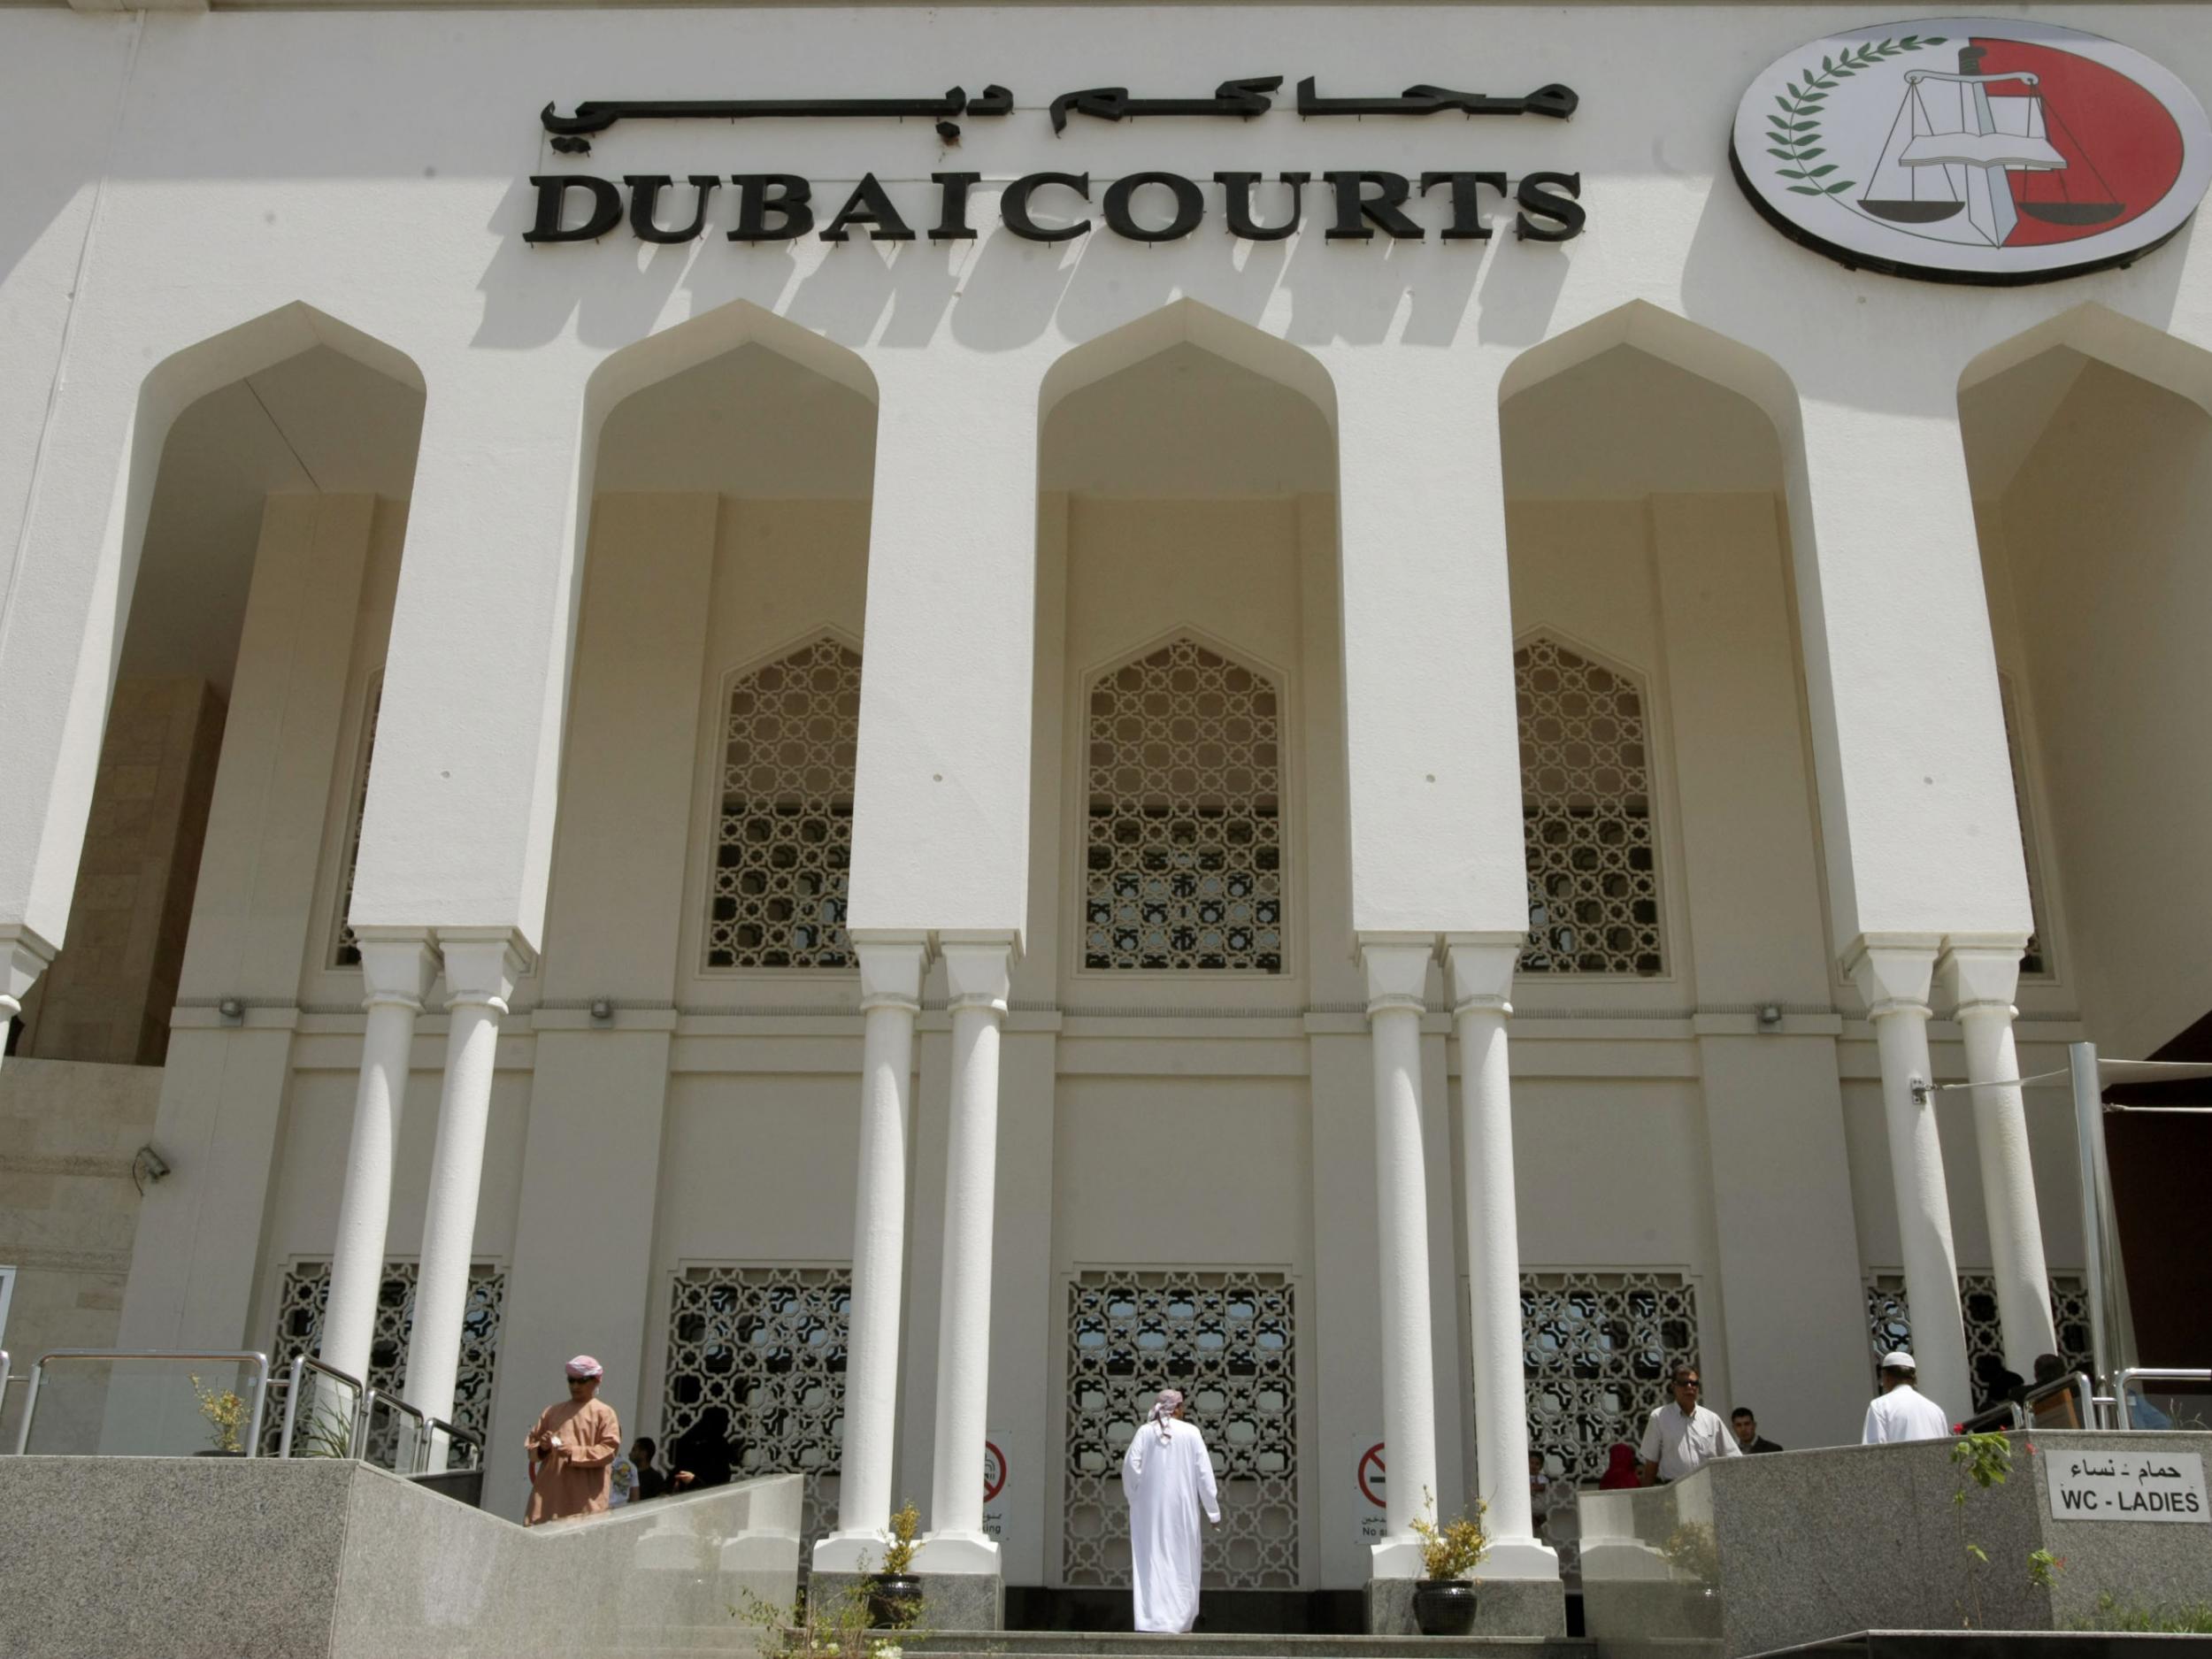 A closeup shot shows the facade of the Dubai Courts building